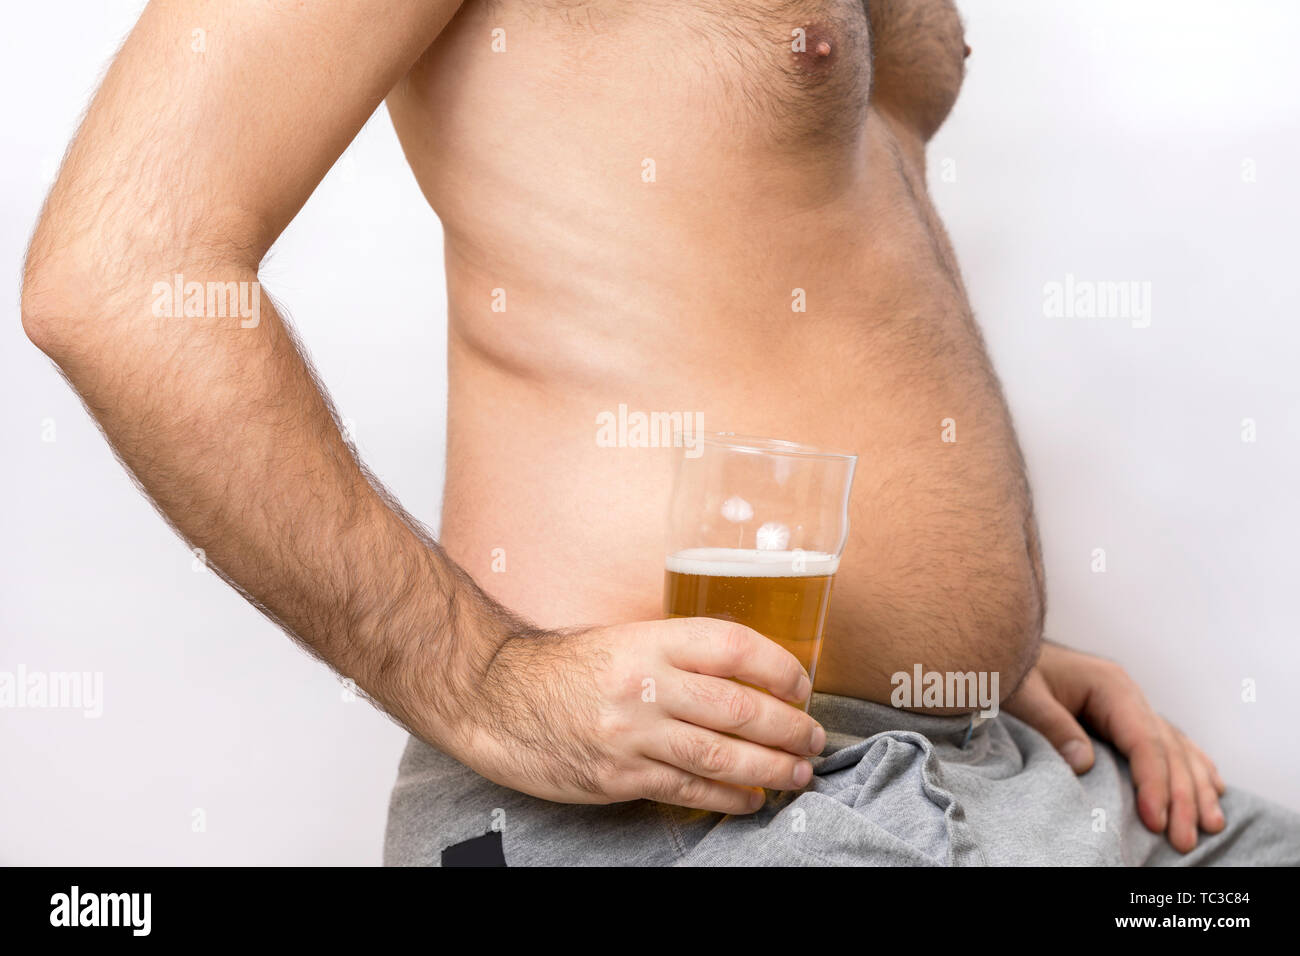 Alkohol süchtig Mann mit einem dicken Bauch hält ein Glas Bier Stockfoto